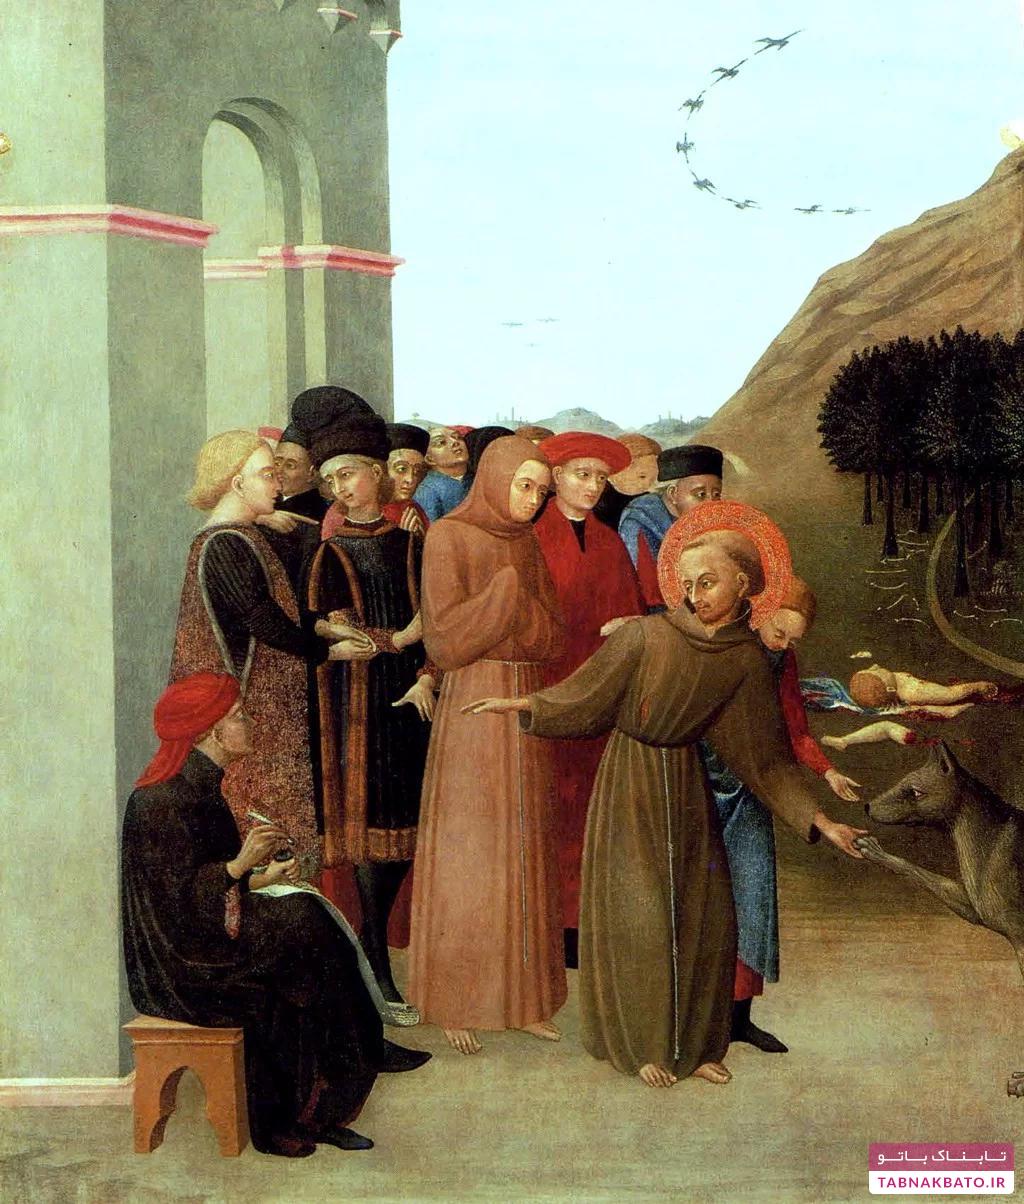 حیوانات در تابلوهای نقاشی قرون وسطا چه مفهومی داشتند؟